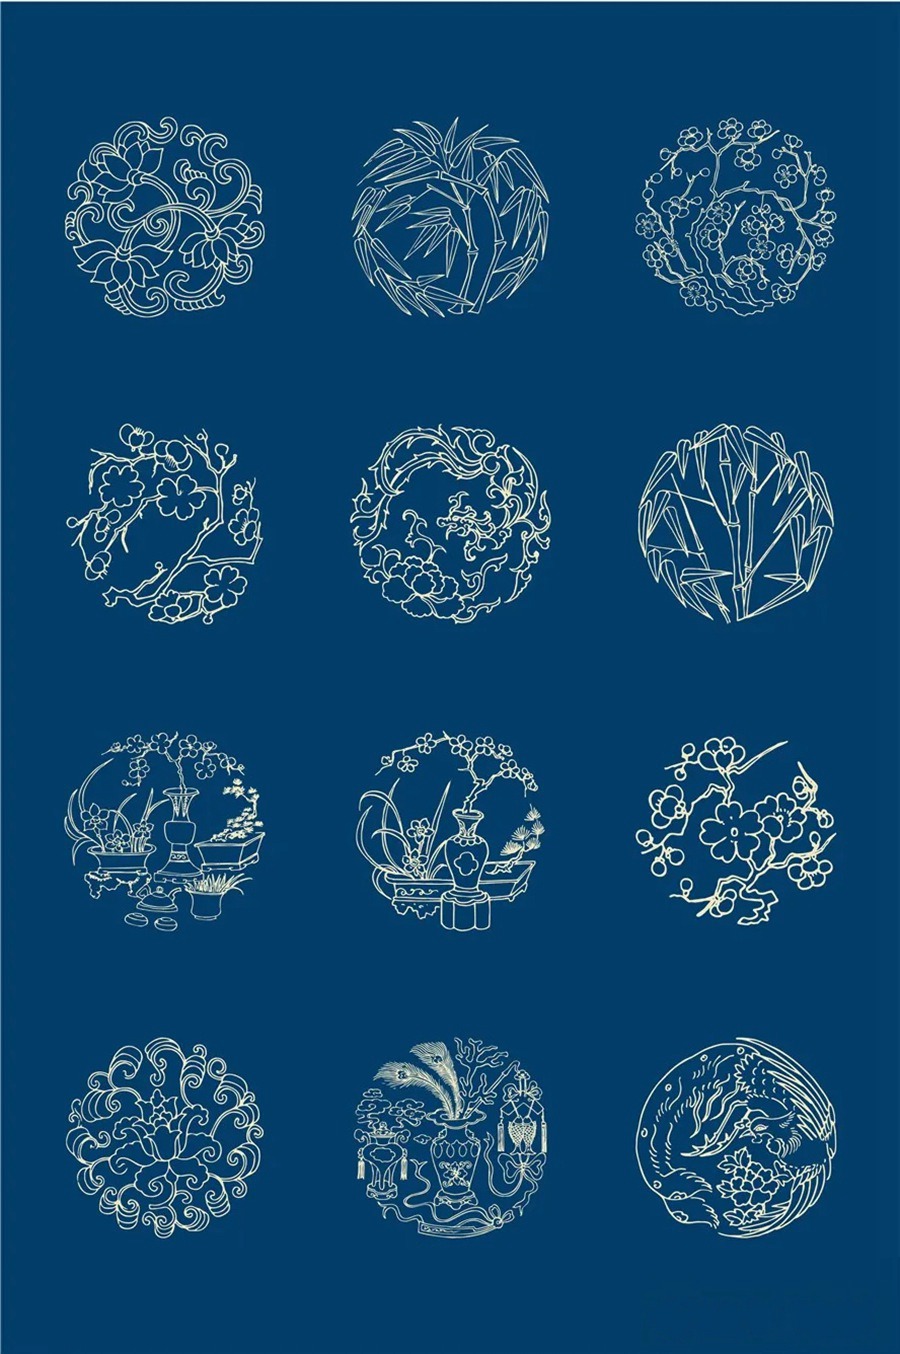 中国风传统古典青花瓷图案花纹图形纹样AI矢量模板花纹设计素材 图片素材 第20张